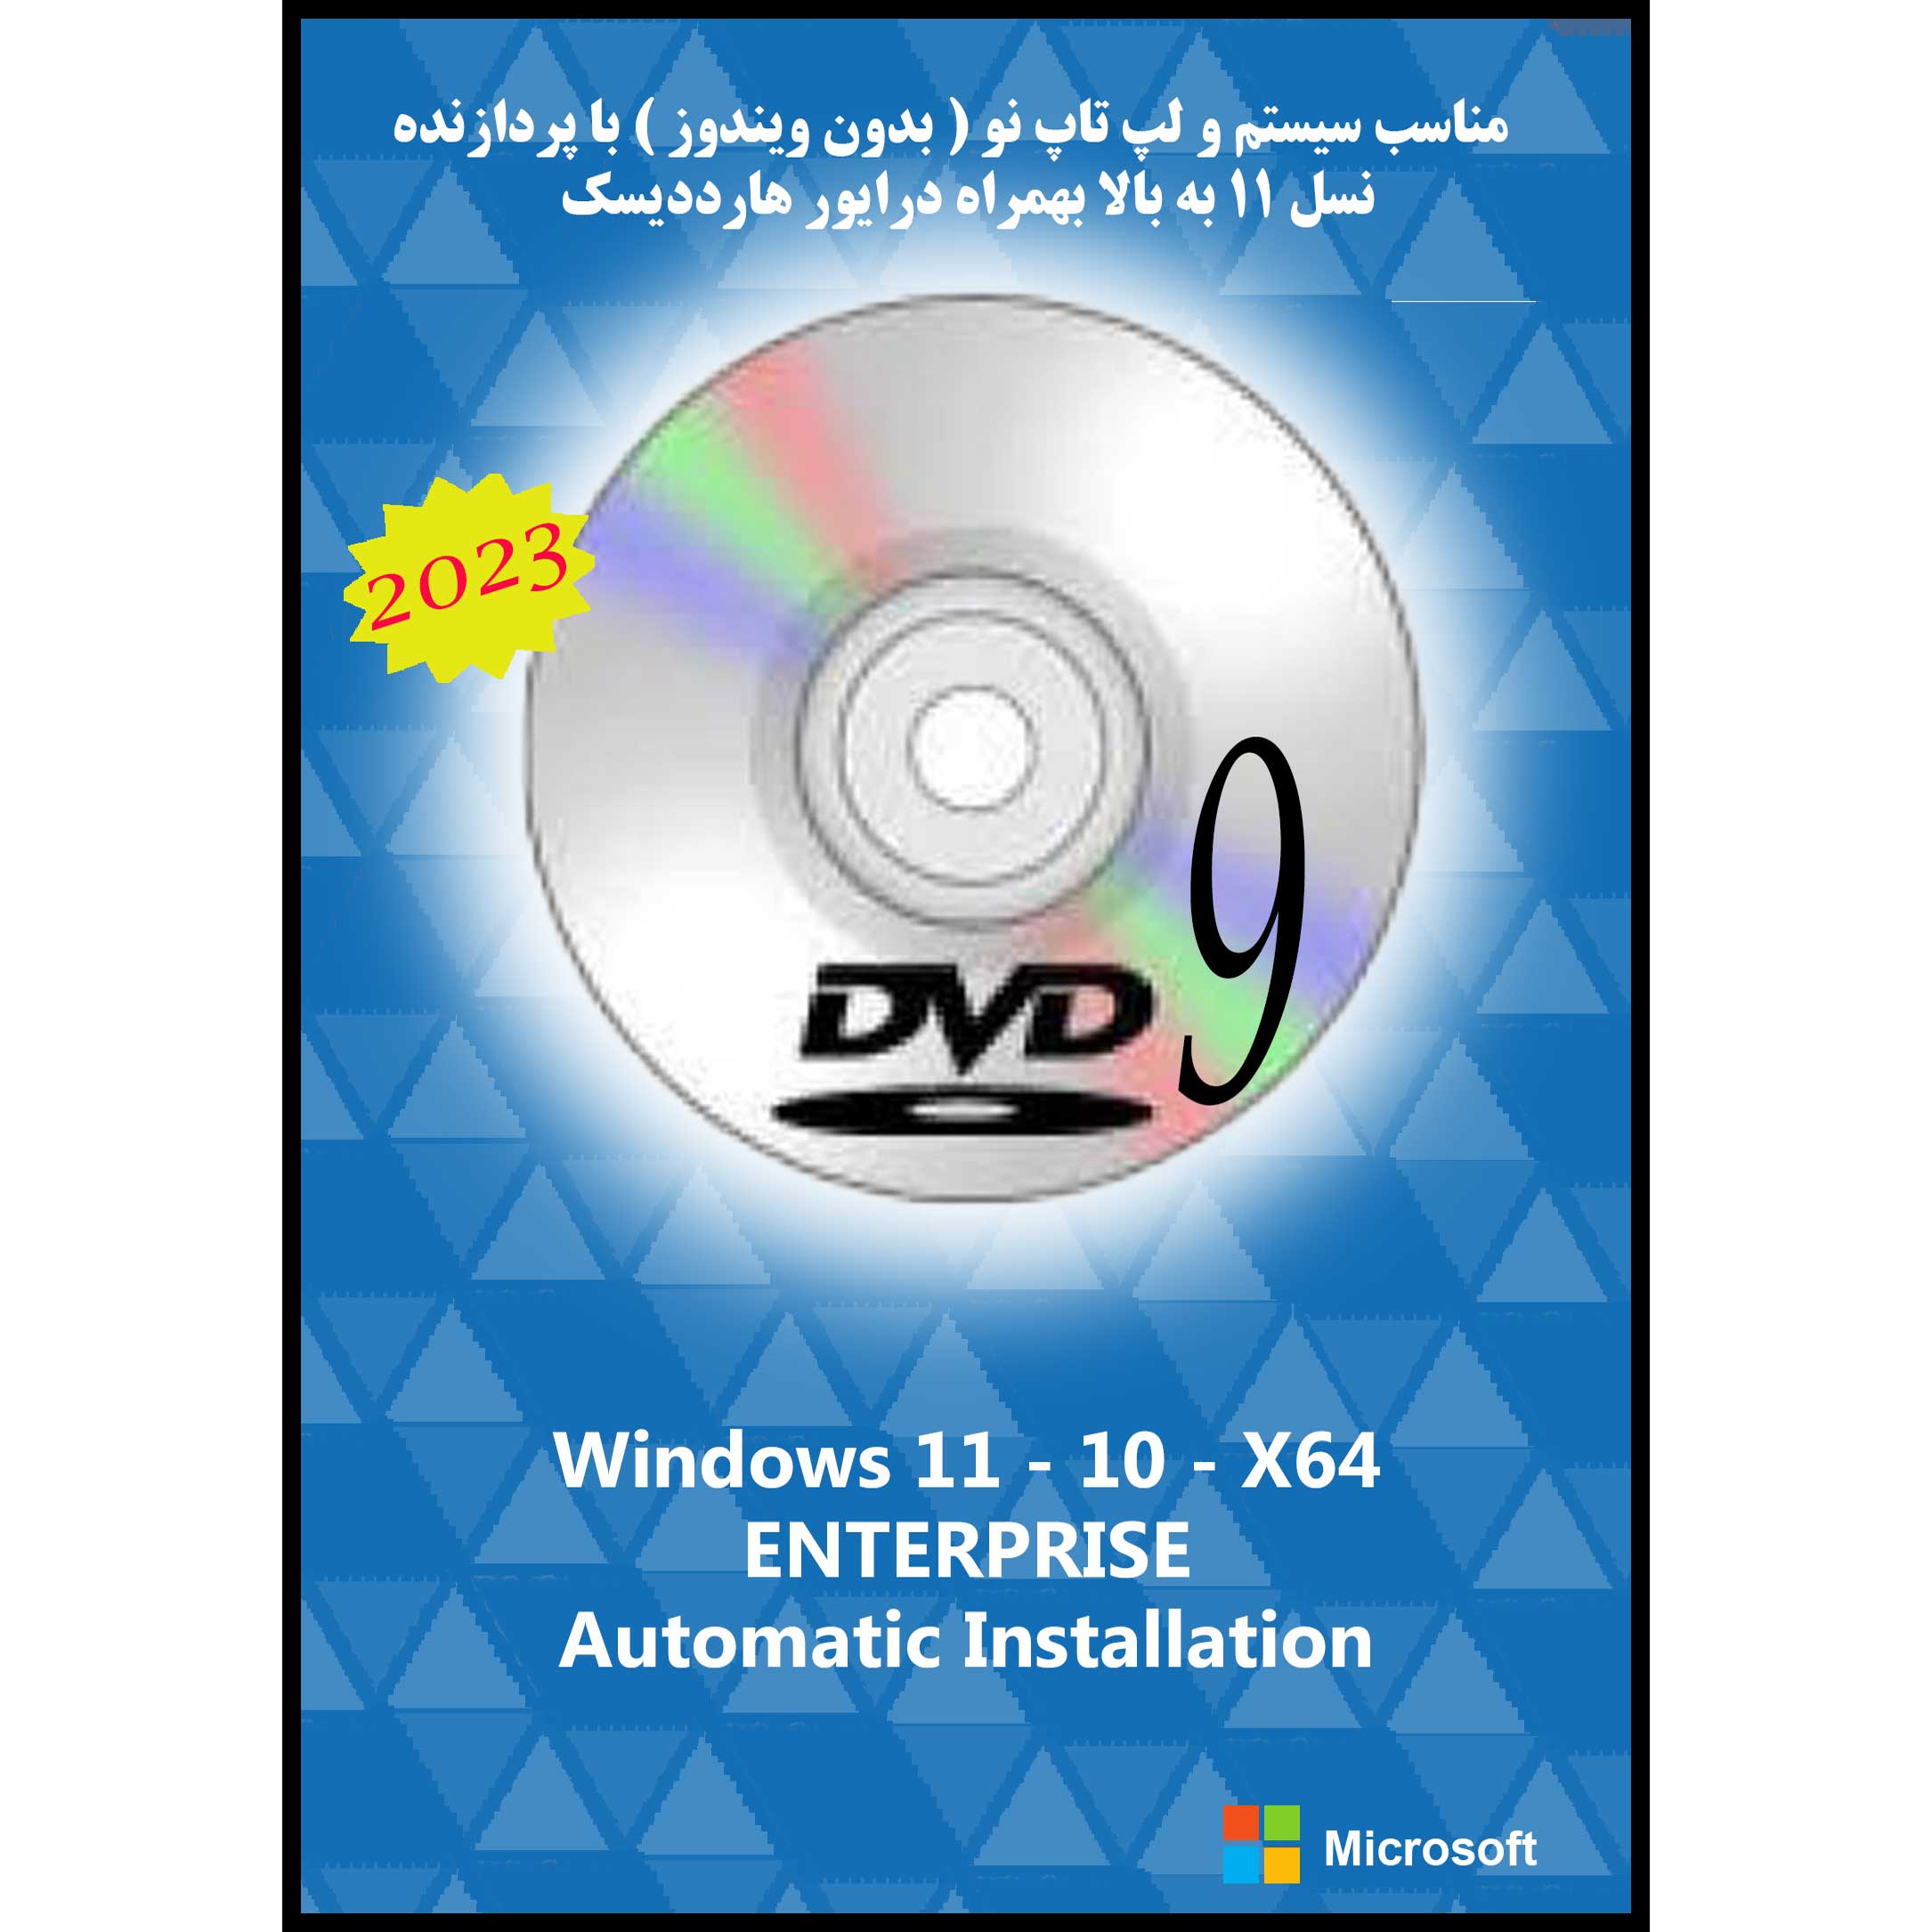 سیستم عامل Windows 11 10 Ent. X64 UEFI DVD9 2023 نشر مایکروسافت